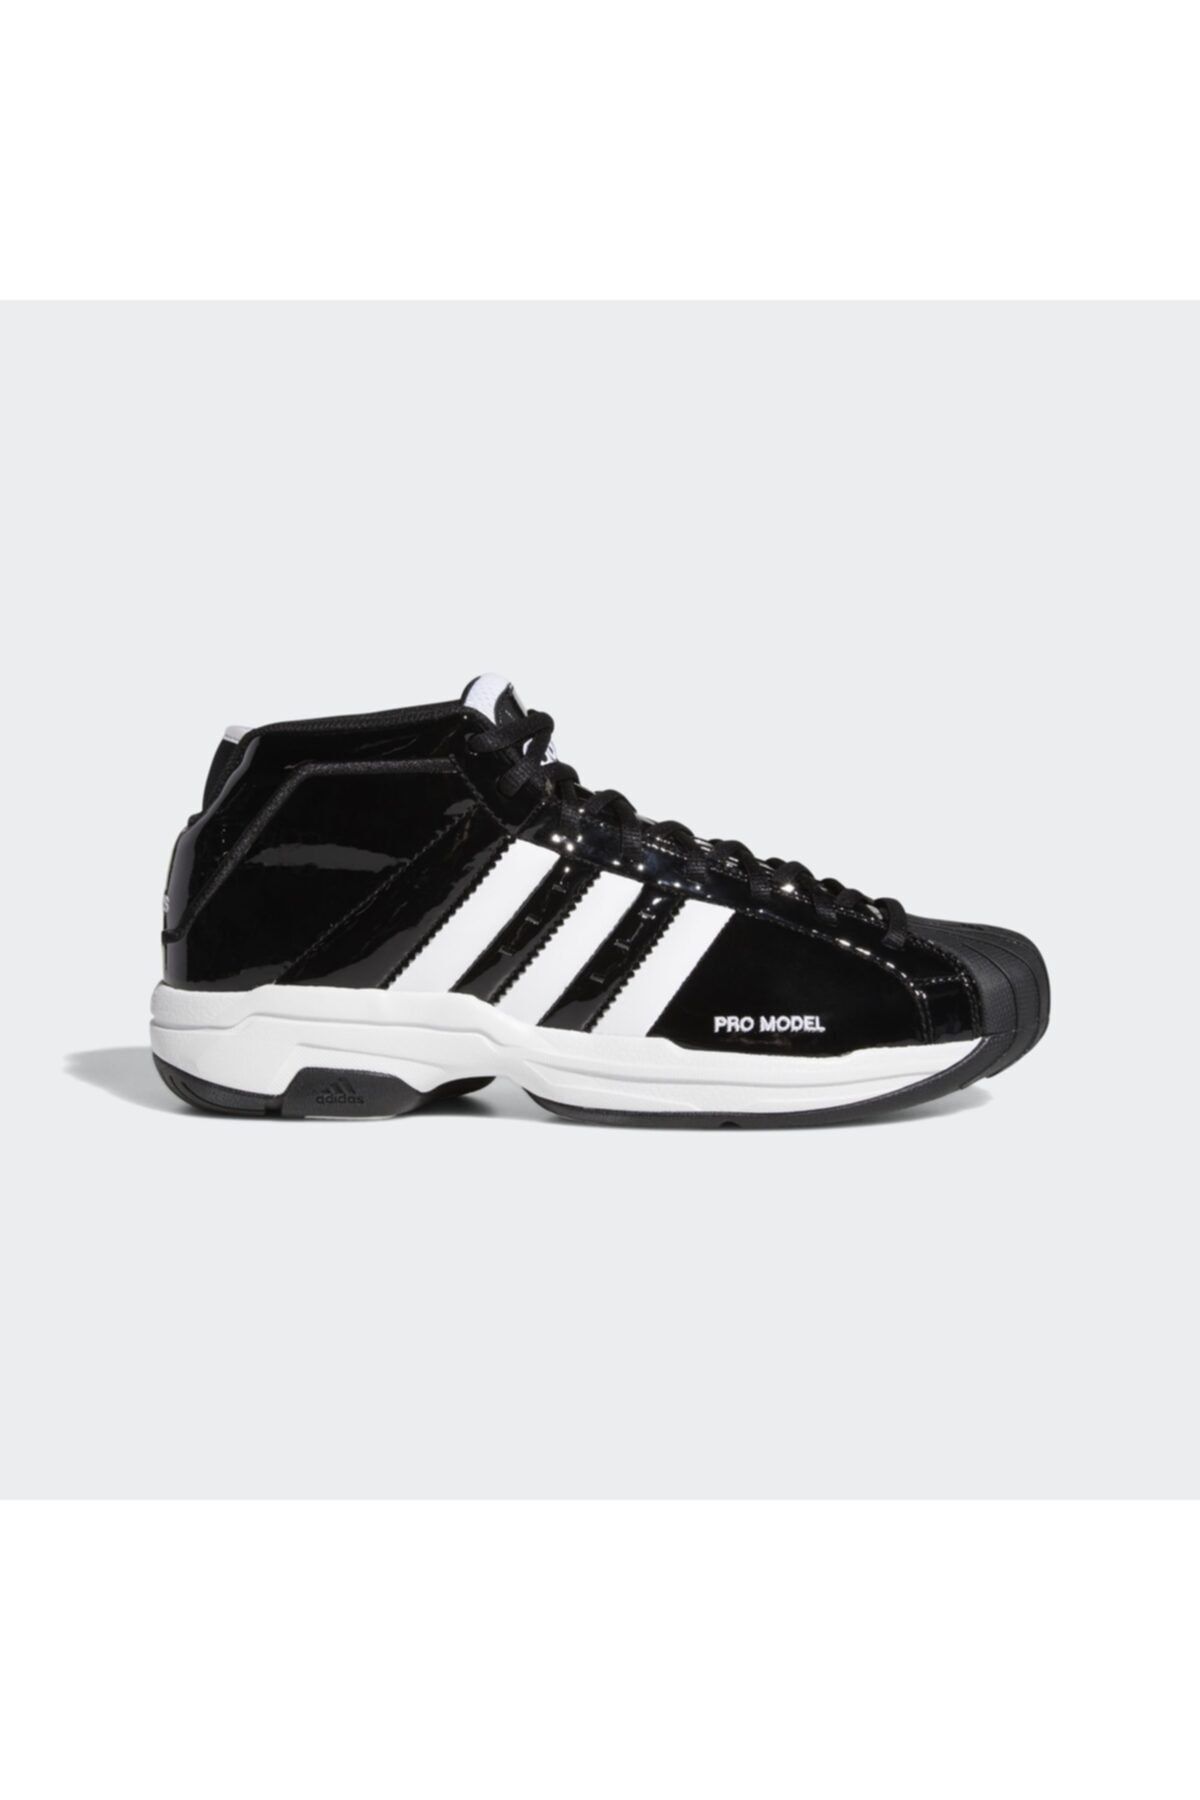 adidas Pro Model 2g Erkek Basketbol Ayakkabısı